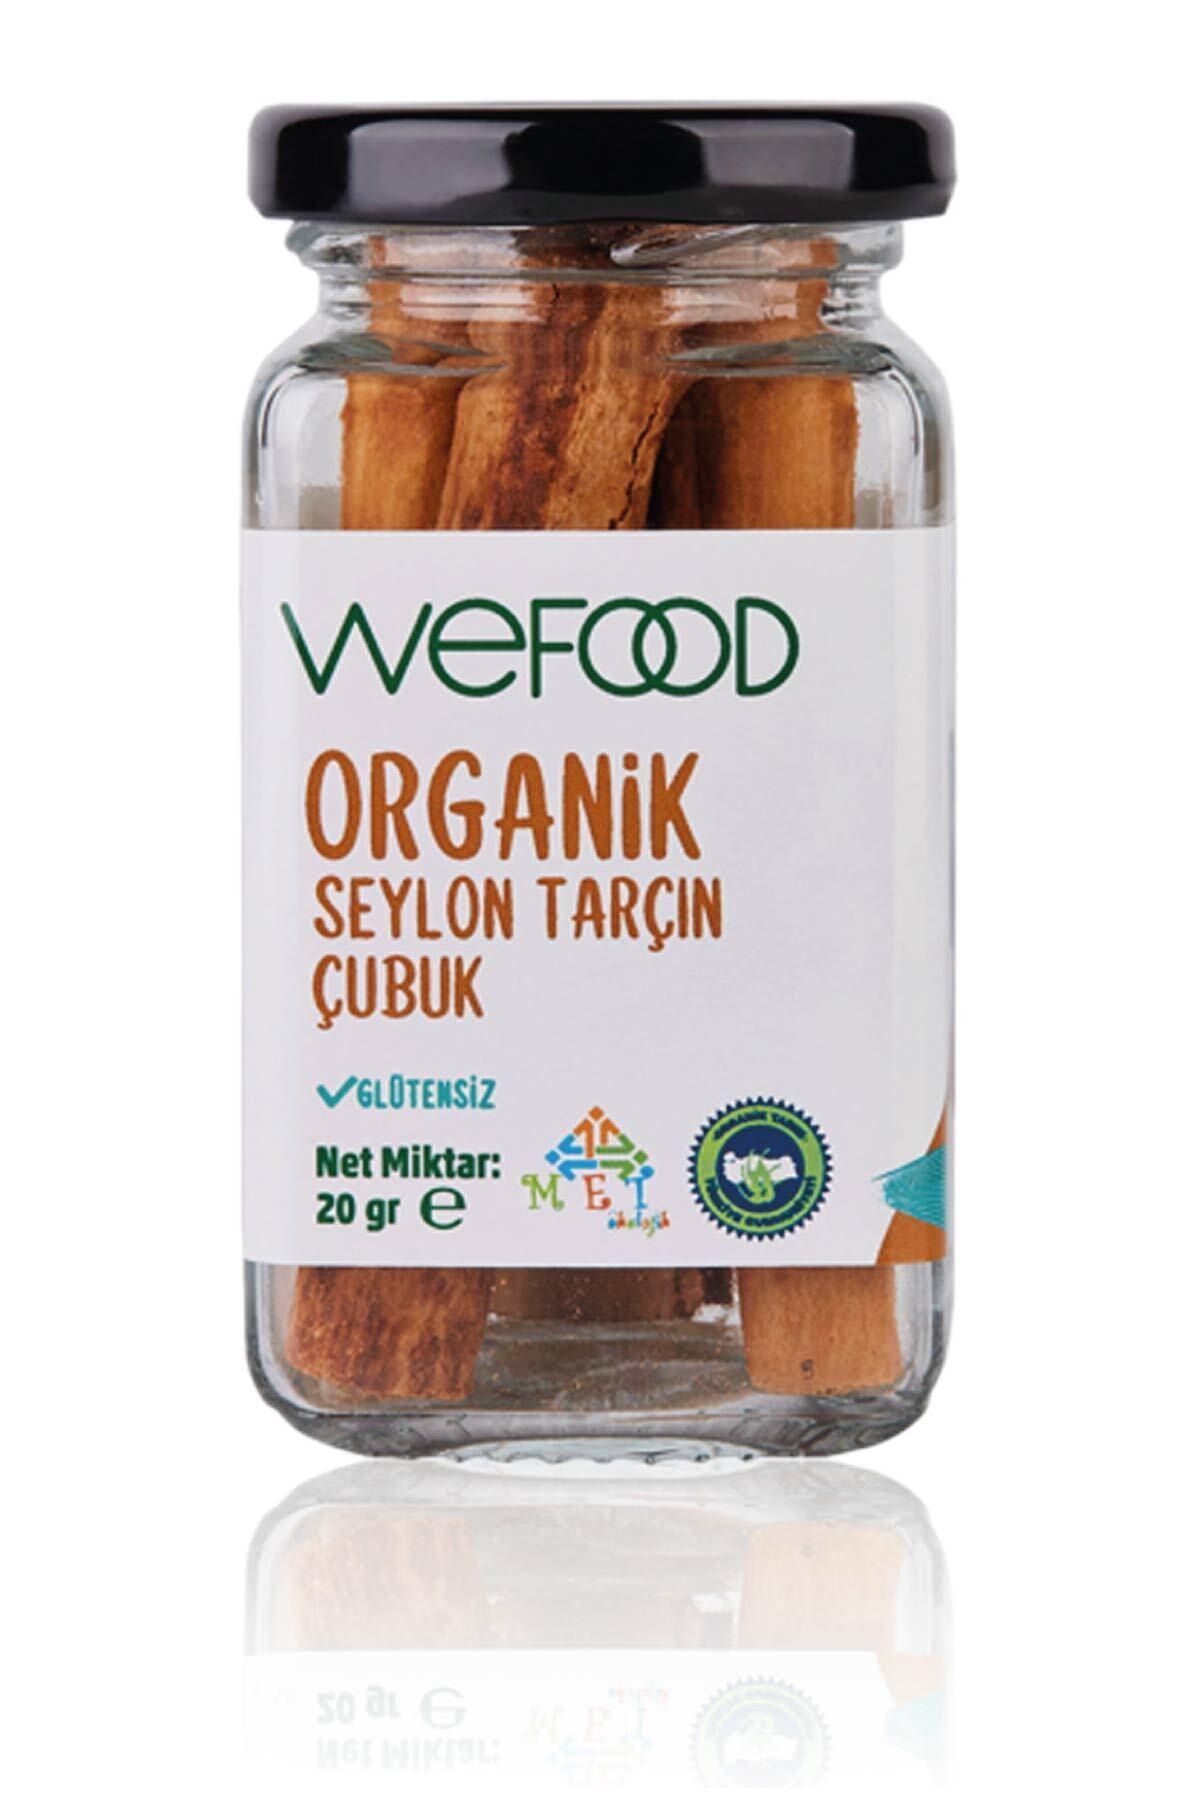 Wefood Organik Seylon Tarçın Çubuk 20 gr